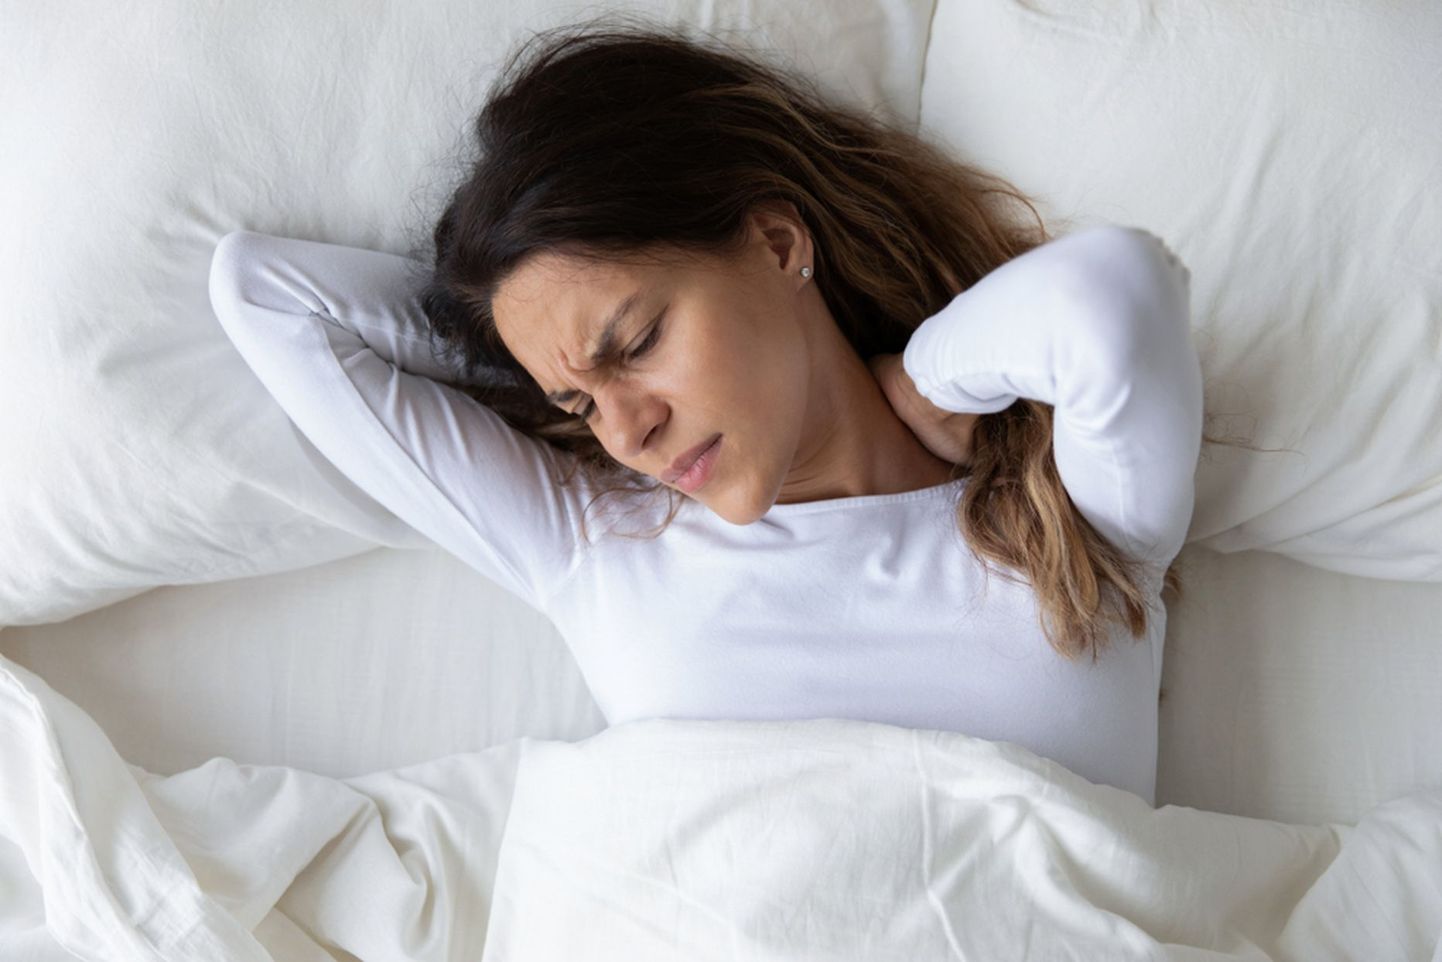 Сильная утомляемость является одним из основных симптомов железодефицитной анемии.